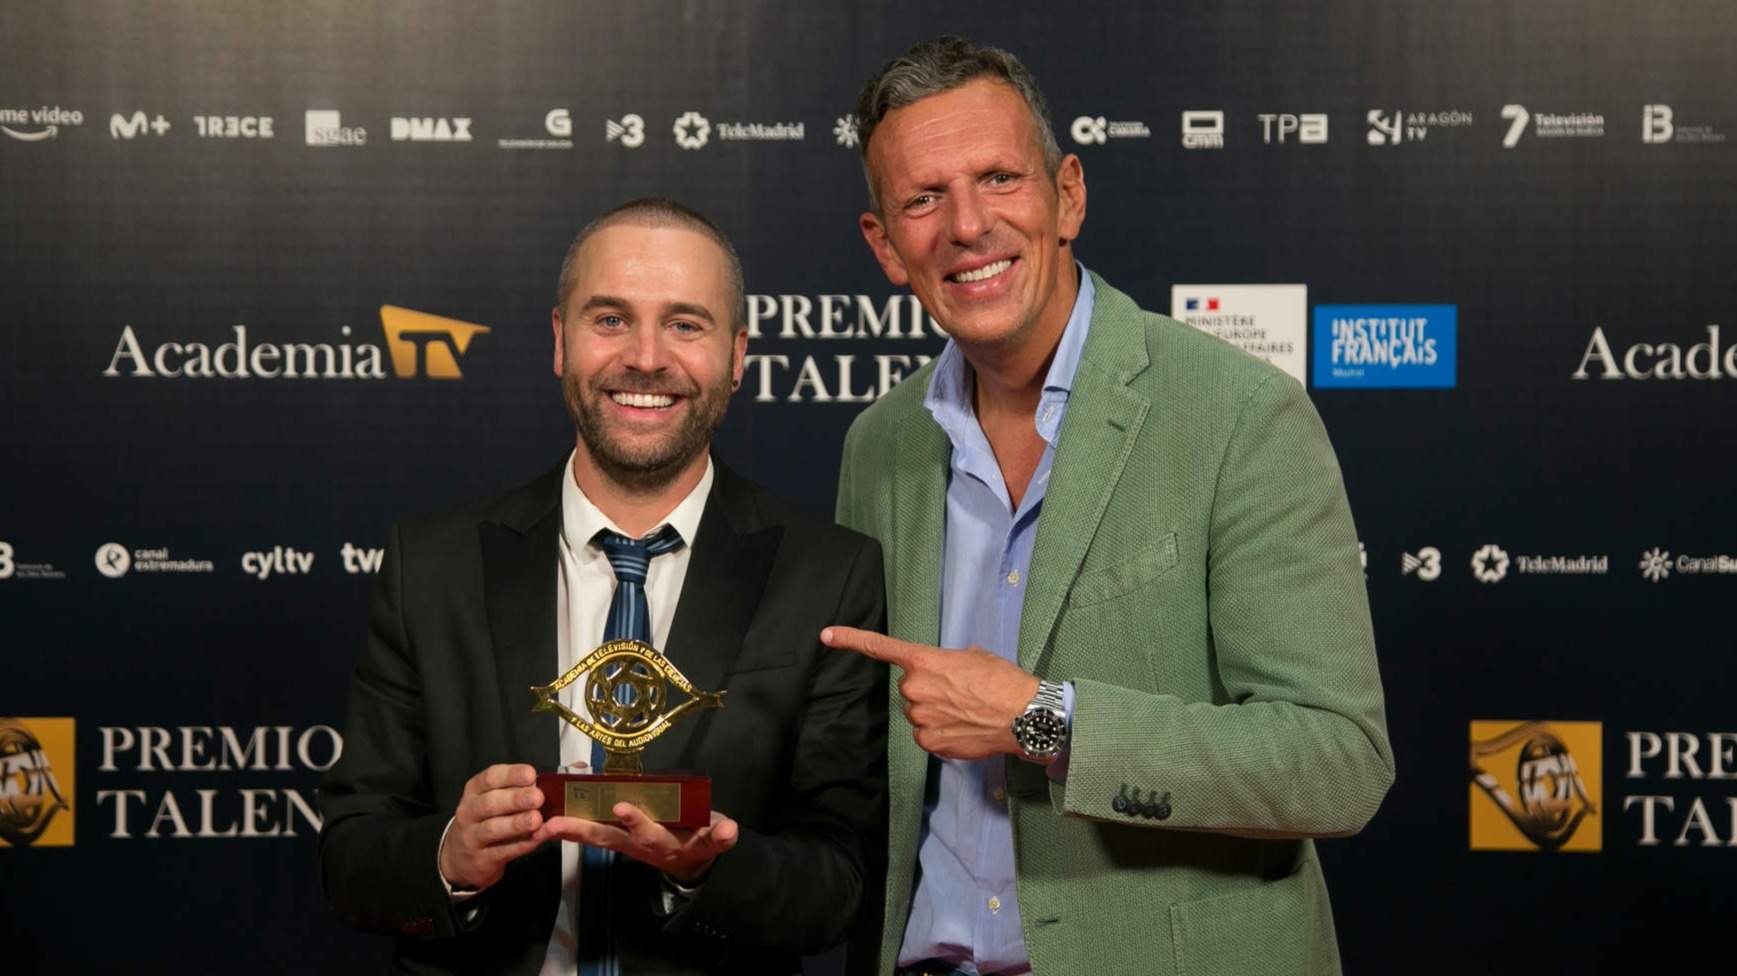  Juan Serrano y Joaquín Prat durante la gala Premio Talento de la Academia de Televisión 